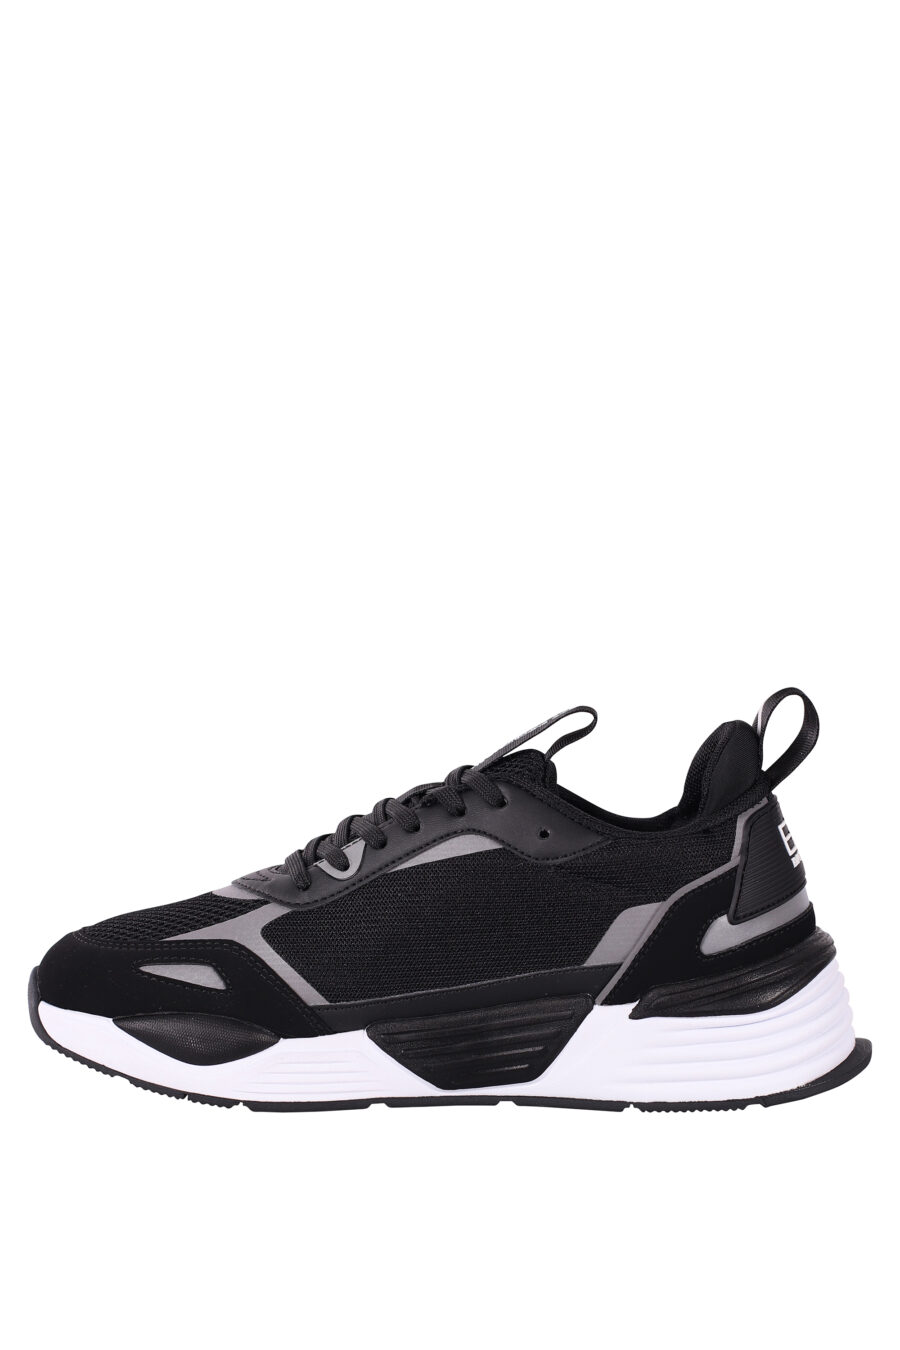 Chaussures "ace runner" noires et argentées avec logo de l'aigle - IMG 5801